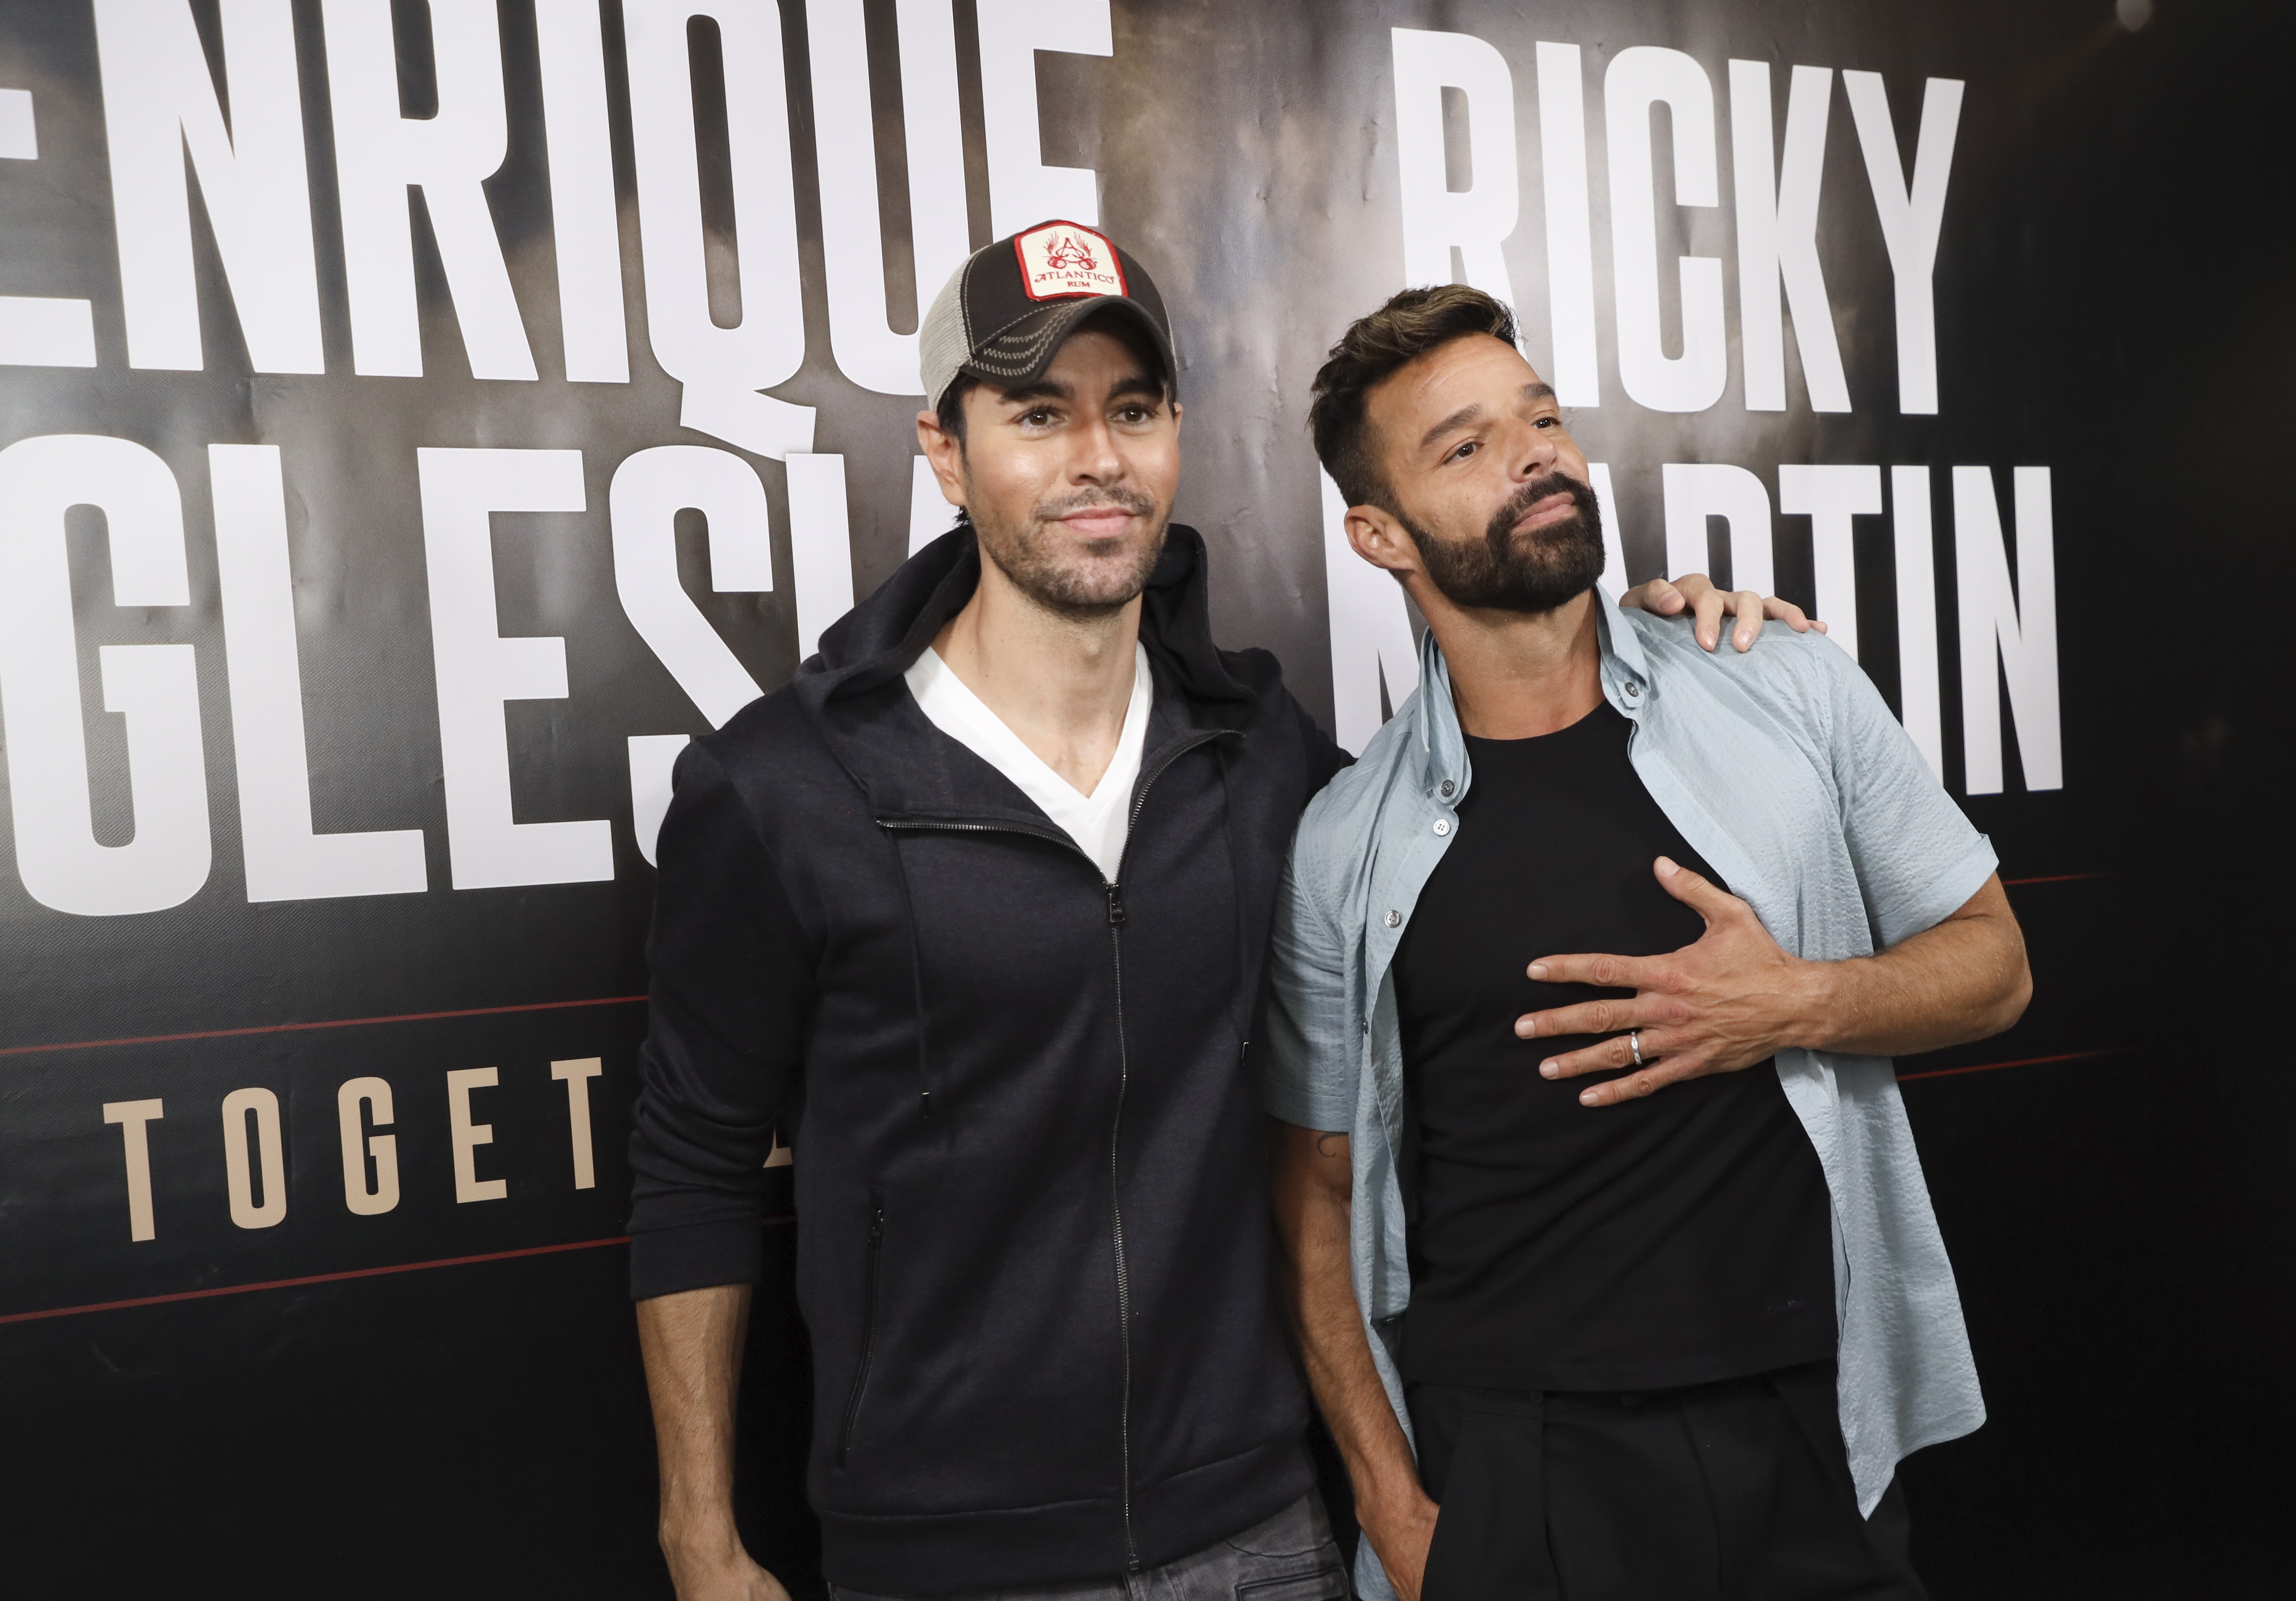 Los cantantes Ricky Martin y Enrique Iglesias. EFE/EPA/EUGENE GARCIA/Archivo
